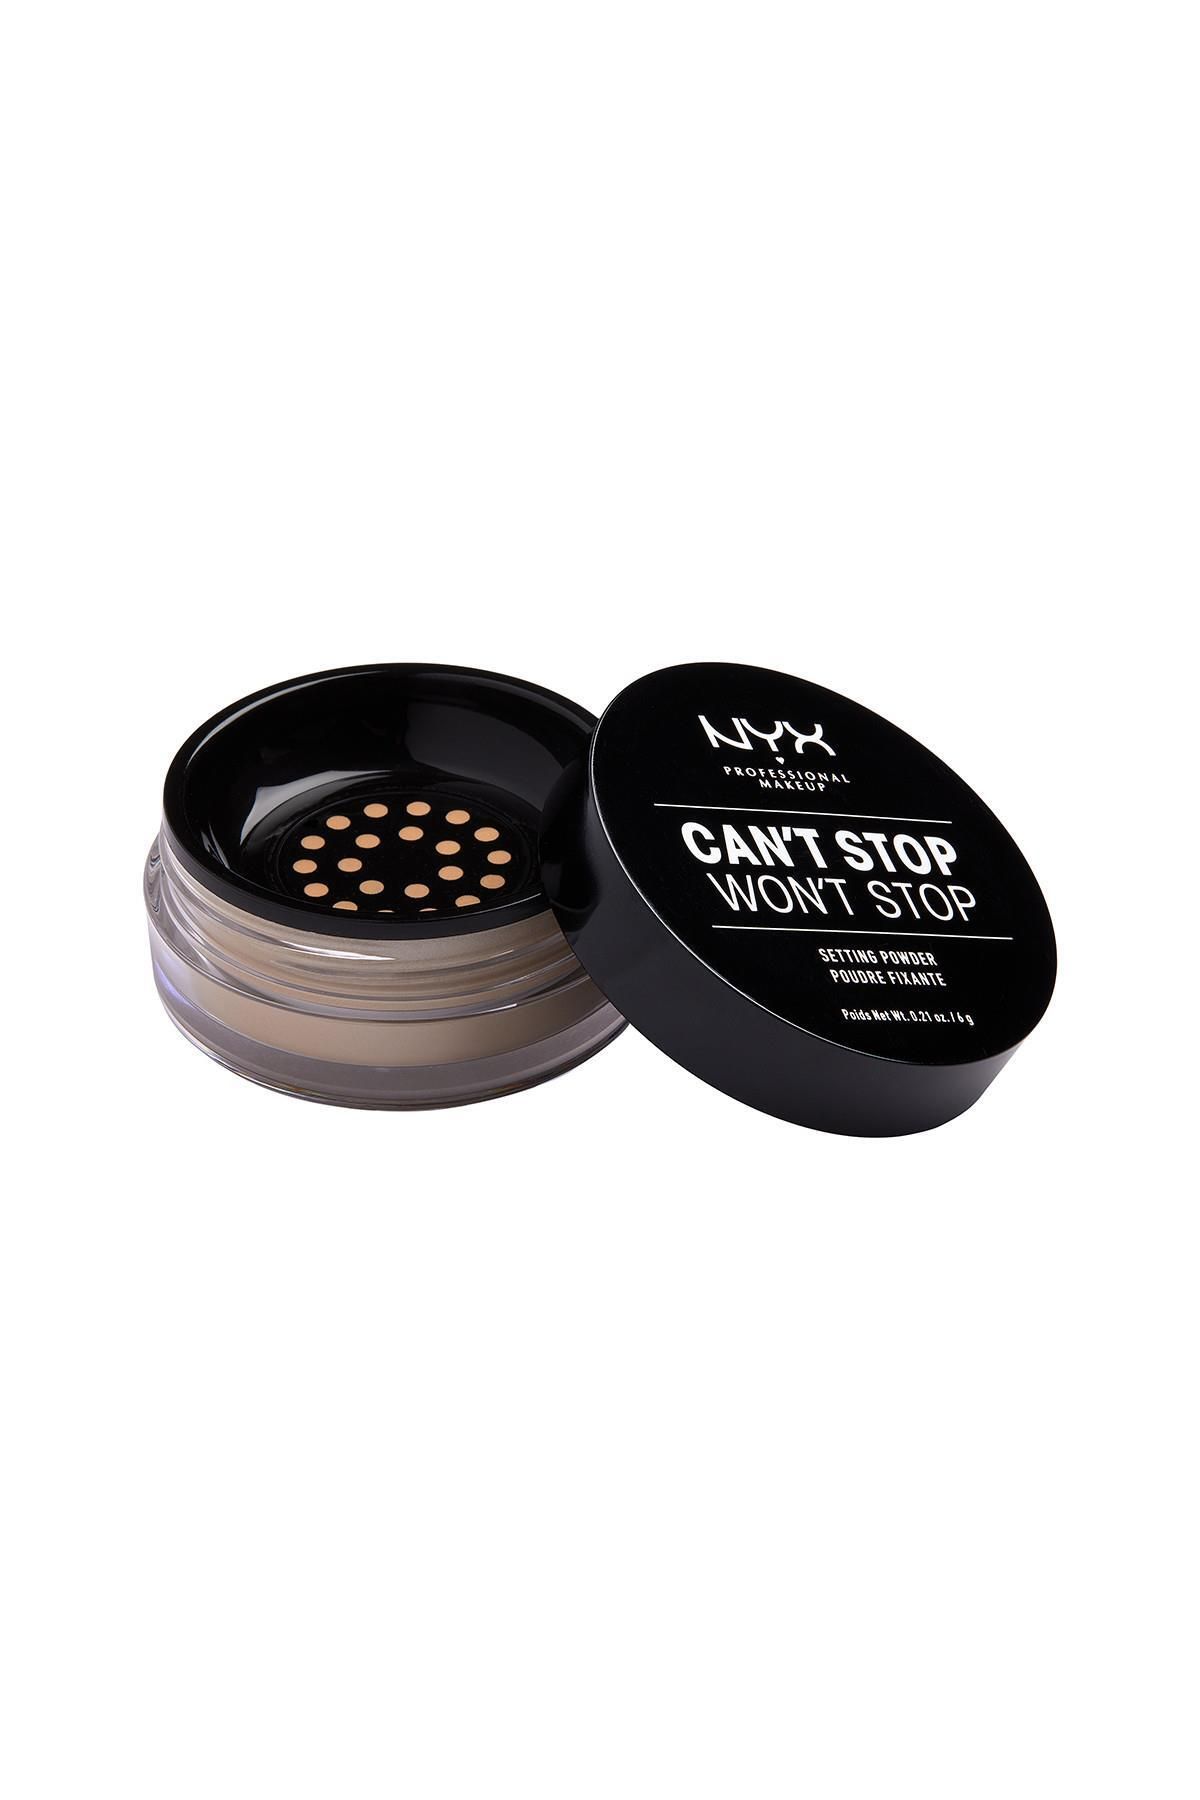 NYX Professional Makeup Sabitleyici Pudra - Can't Stop Won't Stop Setting Powder Medium 800897183714